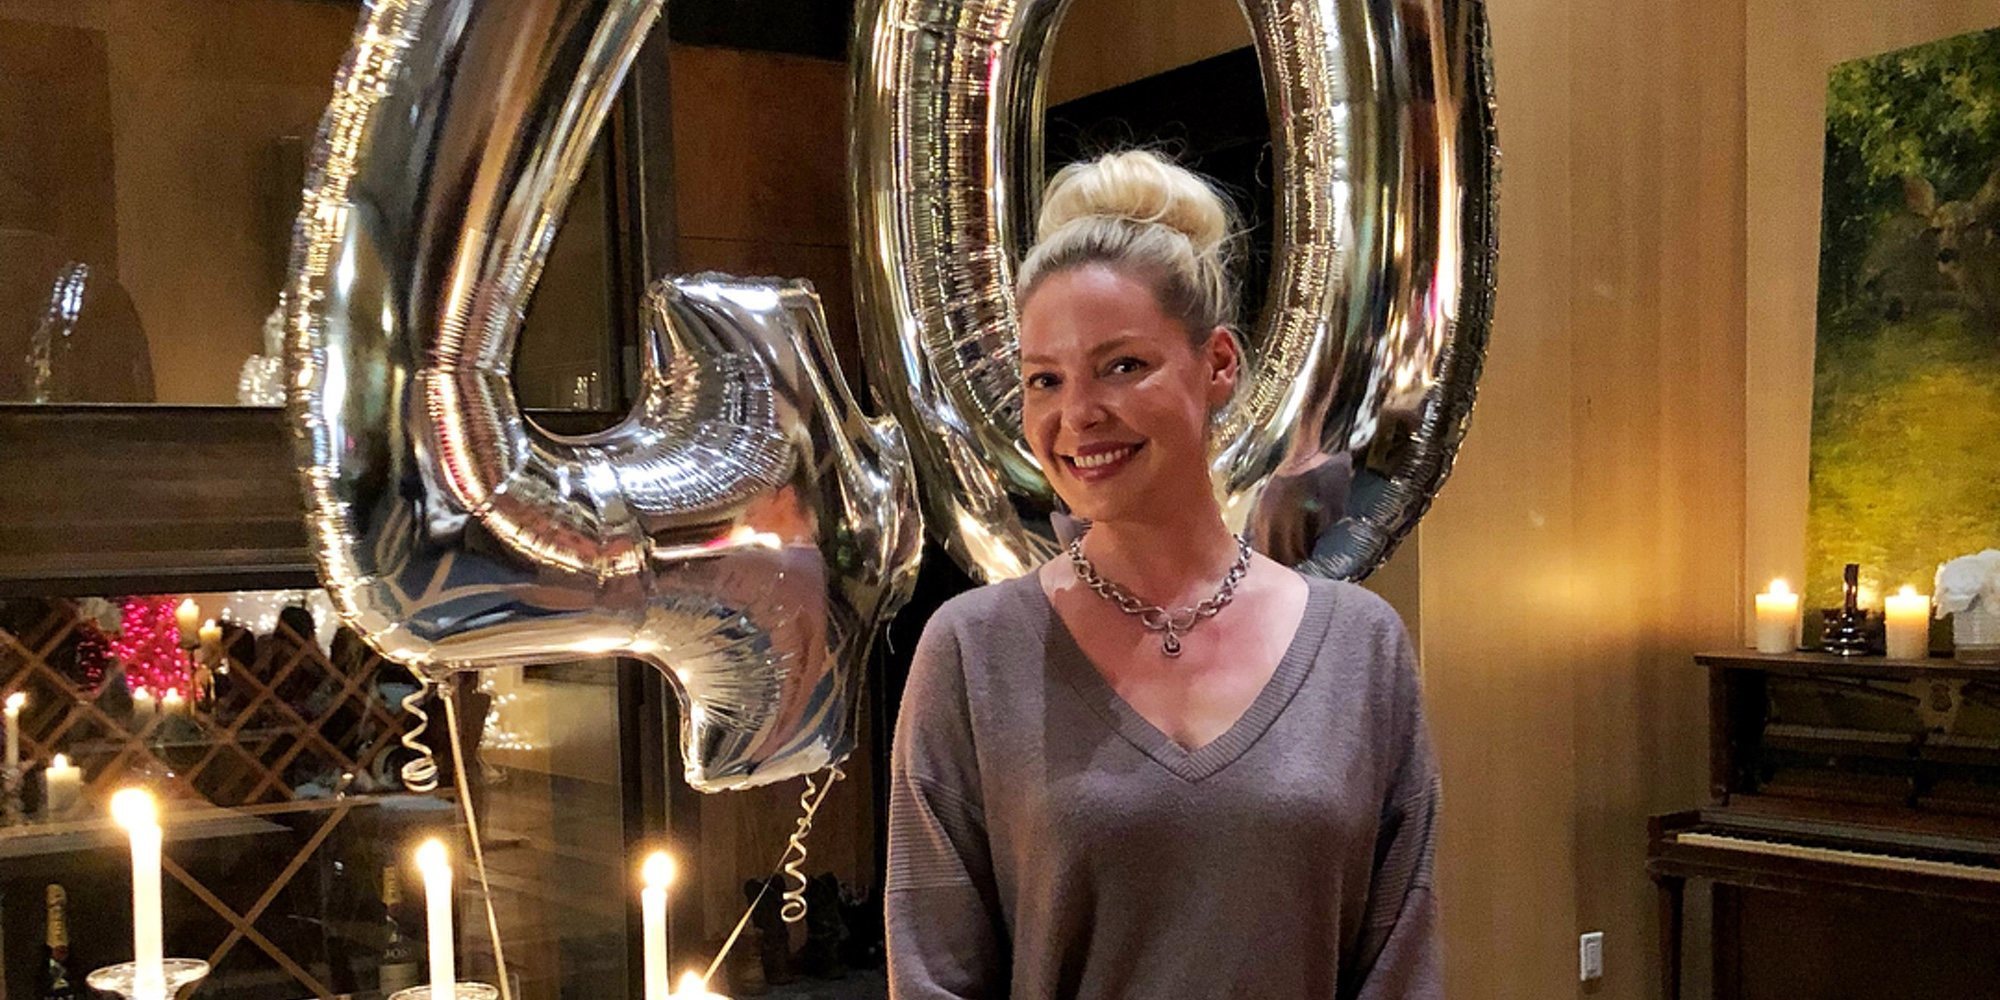 Katherine Heigl reflexiona sobre la edad y el valor en su 40 cumpleaños